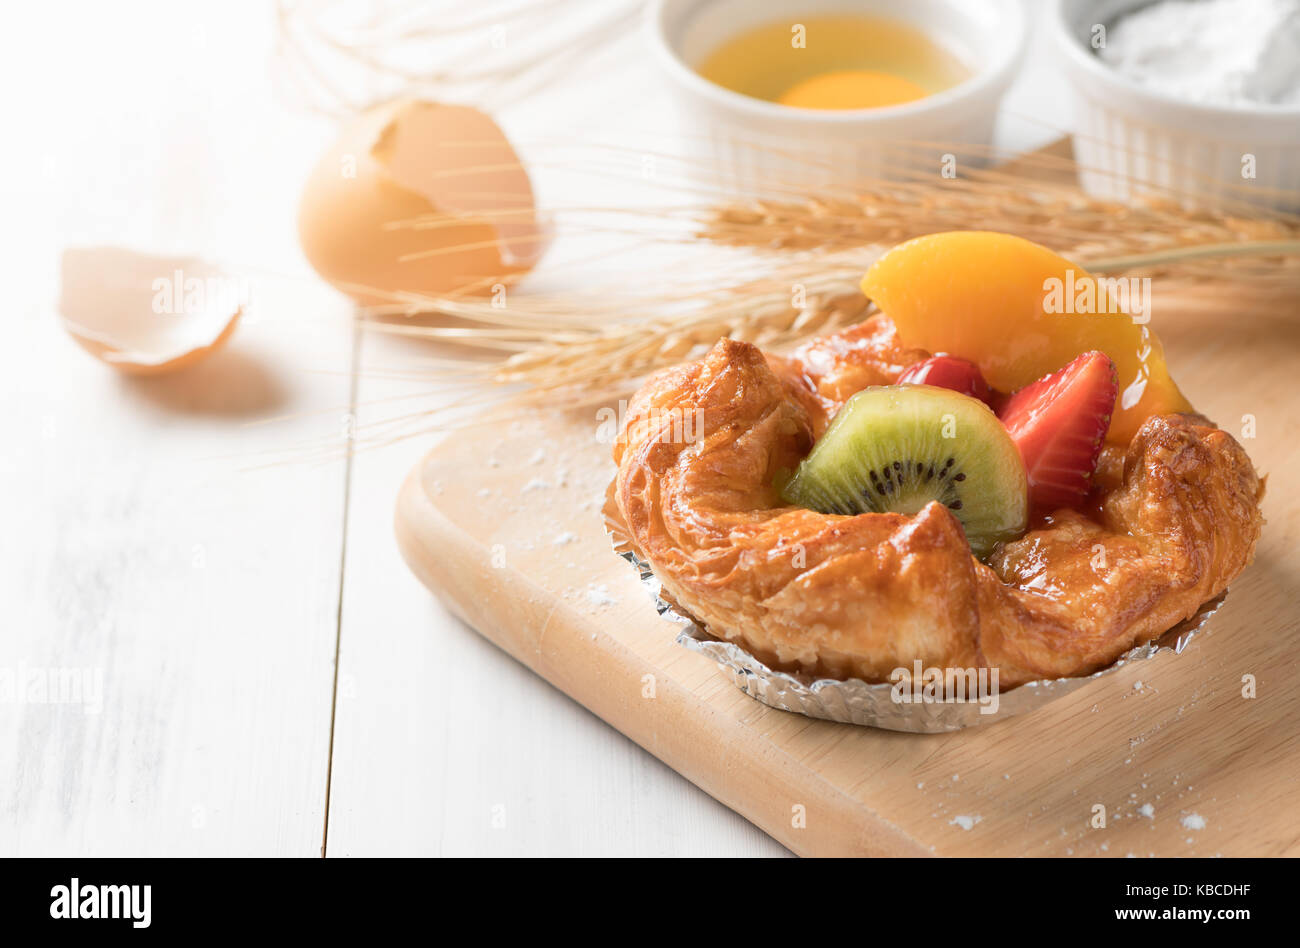 Danish bread with kiwi orange and Strawberry fruits on white wood background, bakery food Stock Photo